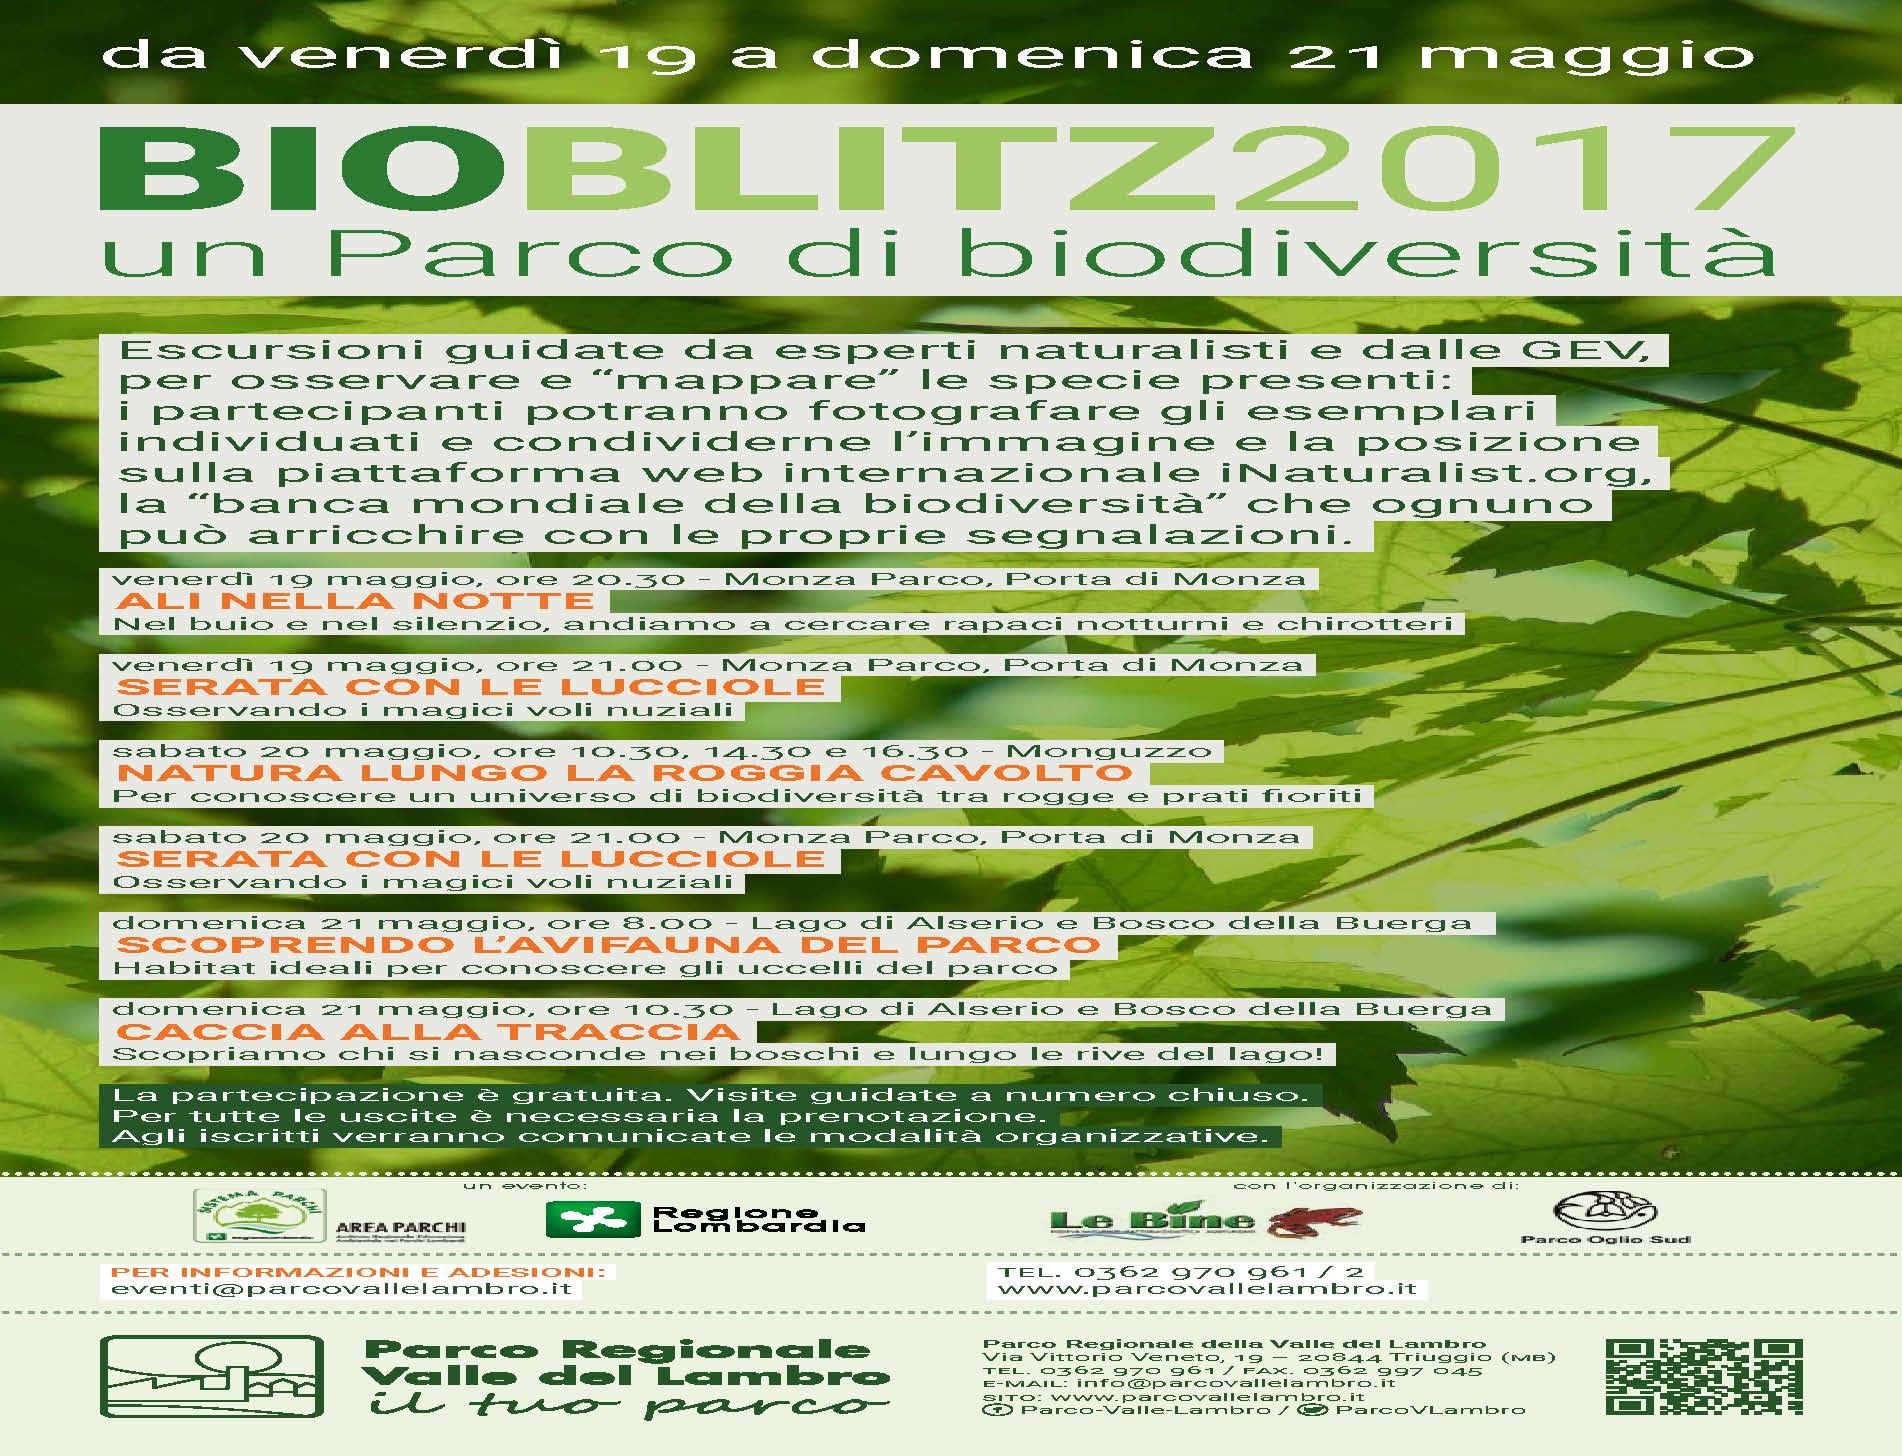 Bioblitz 2017: un parco di biodiversità